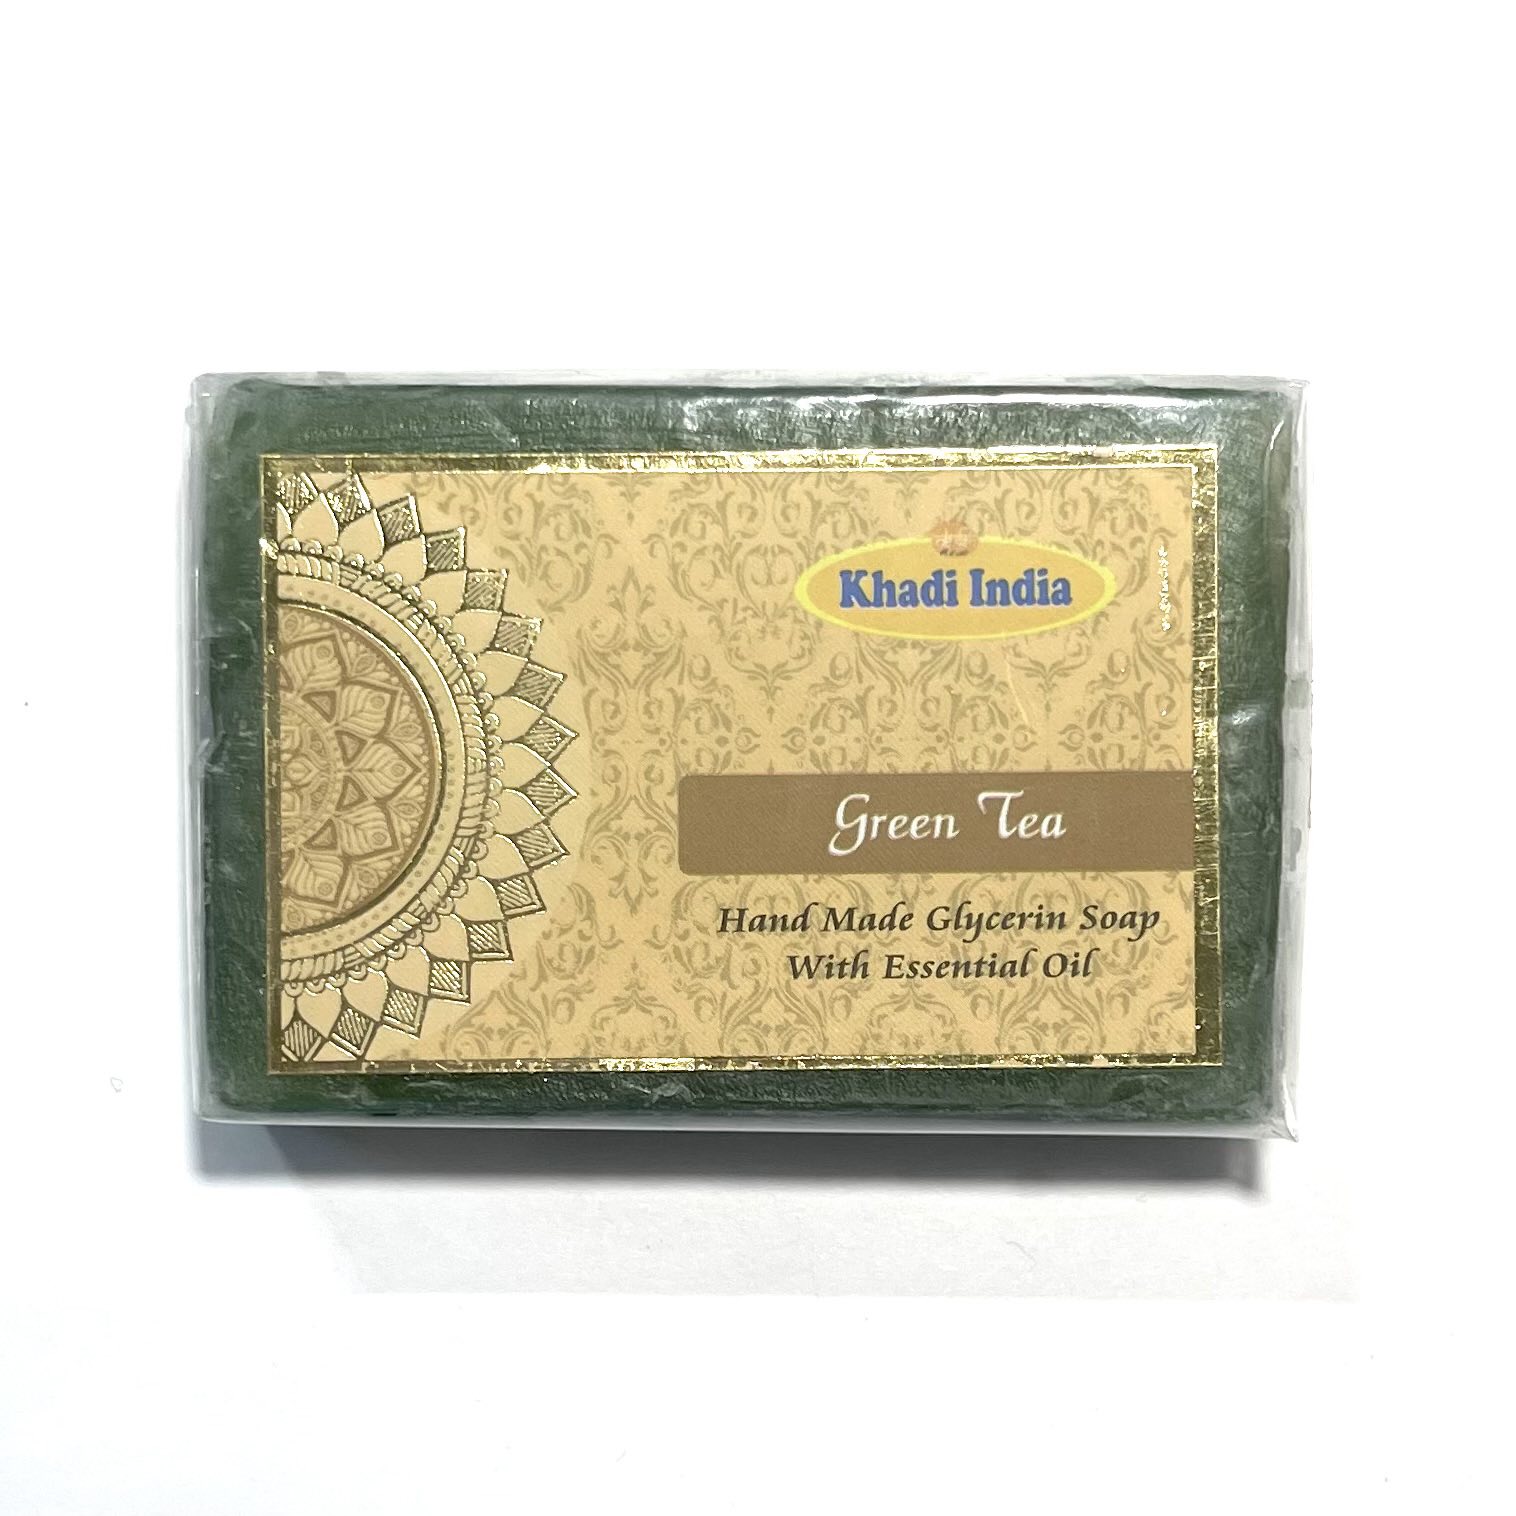 GREEN TEA Hand Made Glycerin Soap With Essential Oil, Khadi India (Глицериновое мыло ручной работы ЗЕЛЁНЫЙ ЧАЙ с эфирными маслами, Кхади Индия), 100 г.